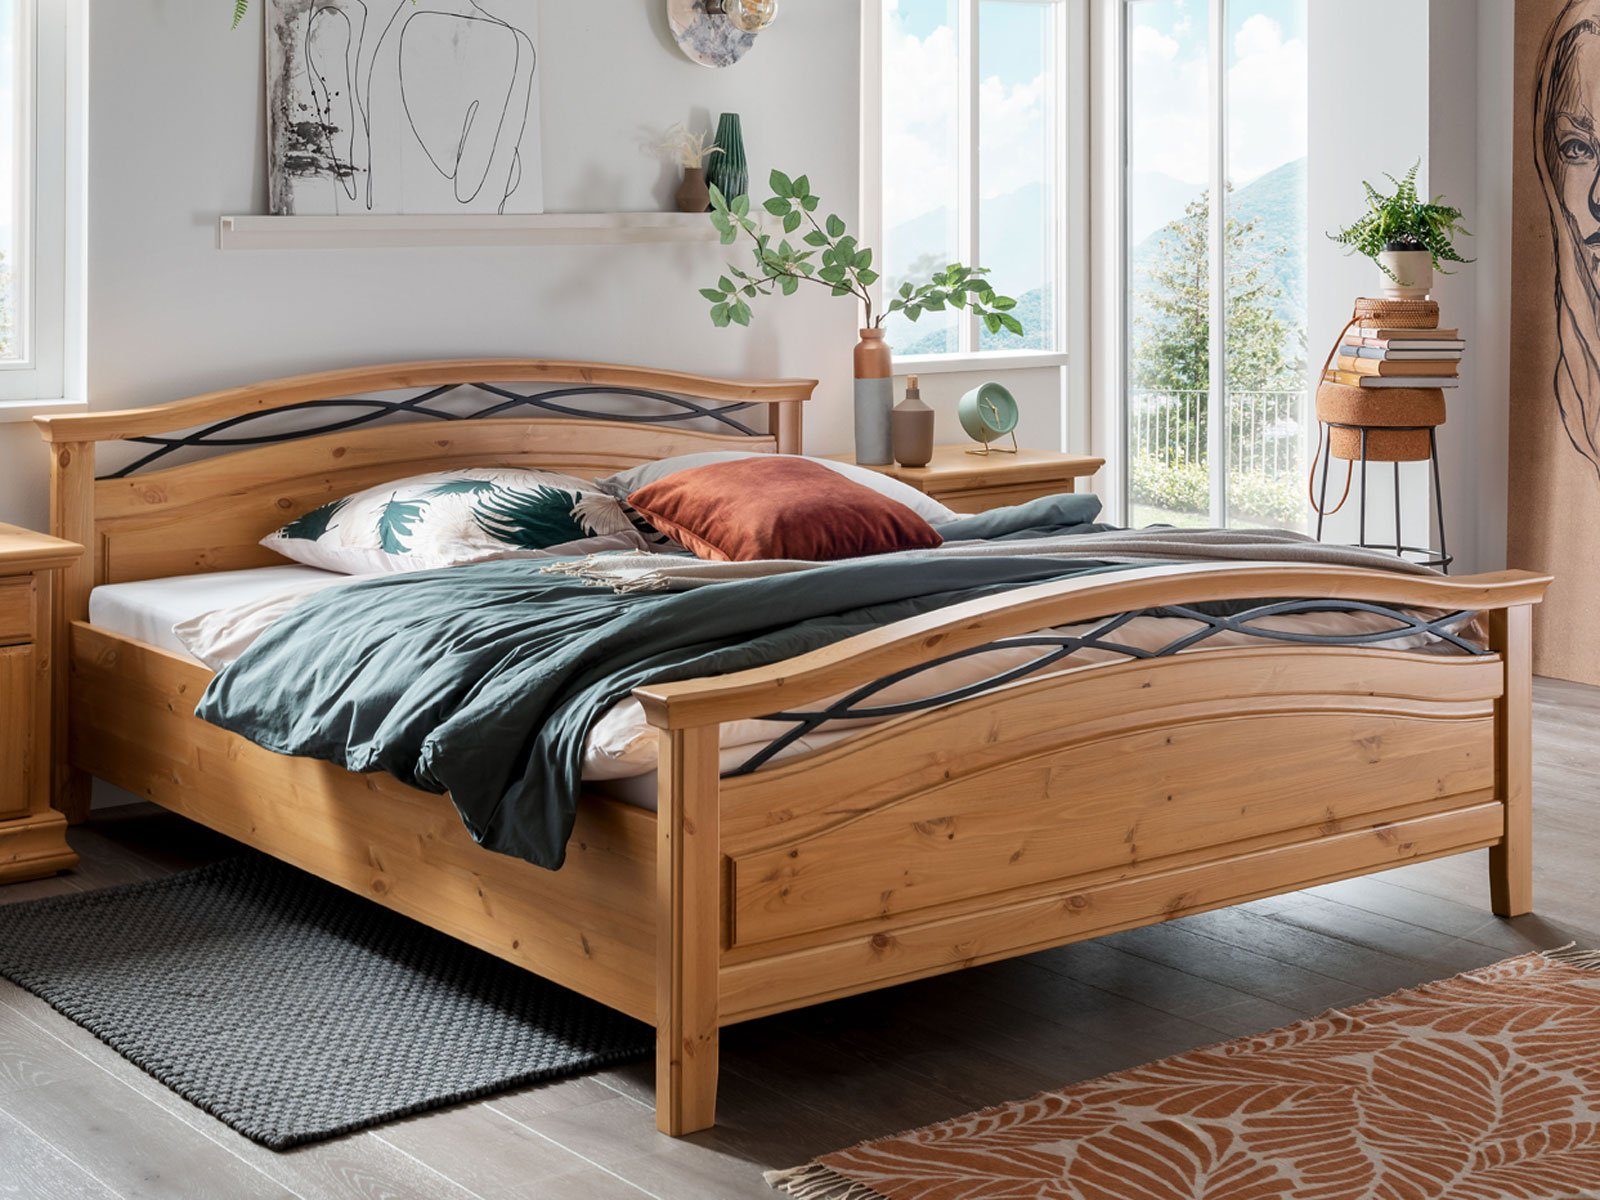 Casamia Massivholzbett Bett 180 x 200 cm Doppelbett Ehebett Catania Holz  Pinie Nordica massiv natur